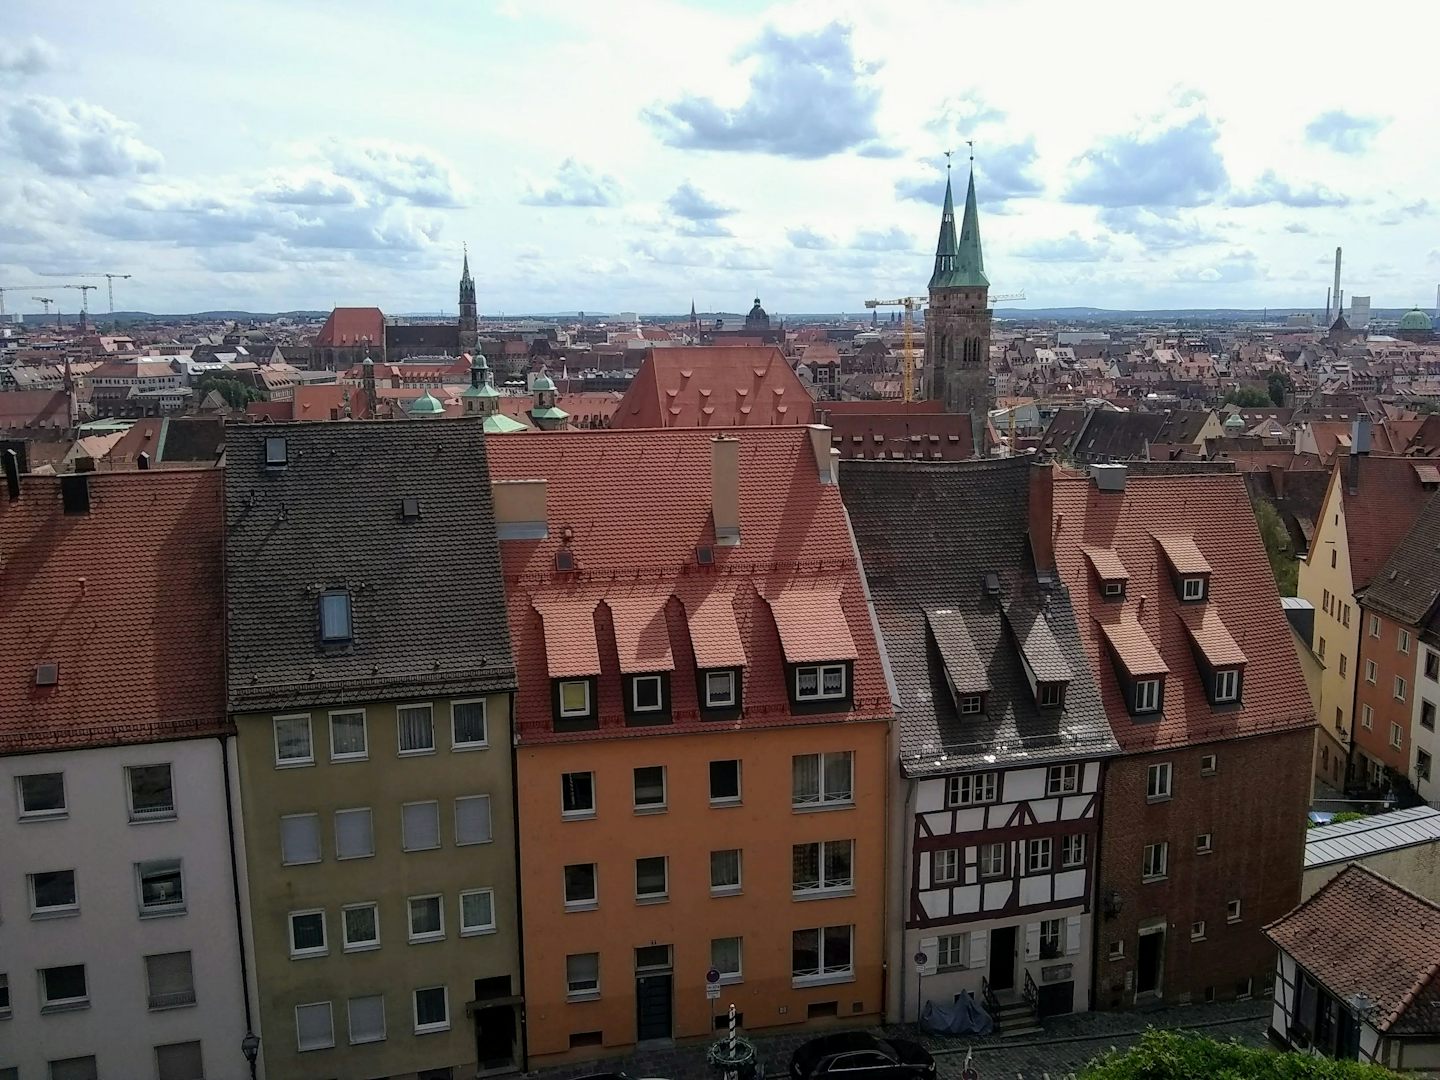 View of Nuremberg, Germany